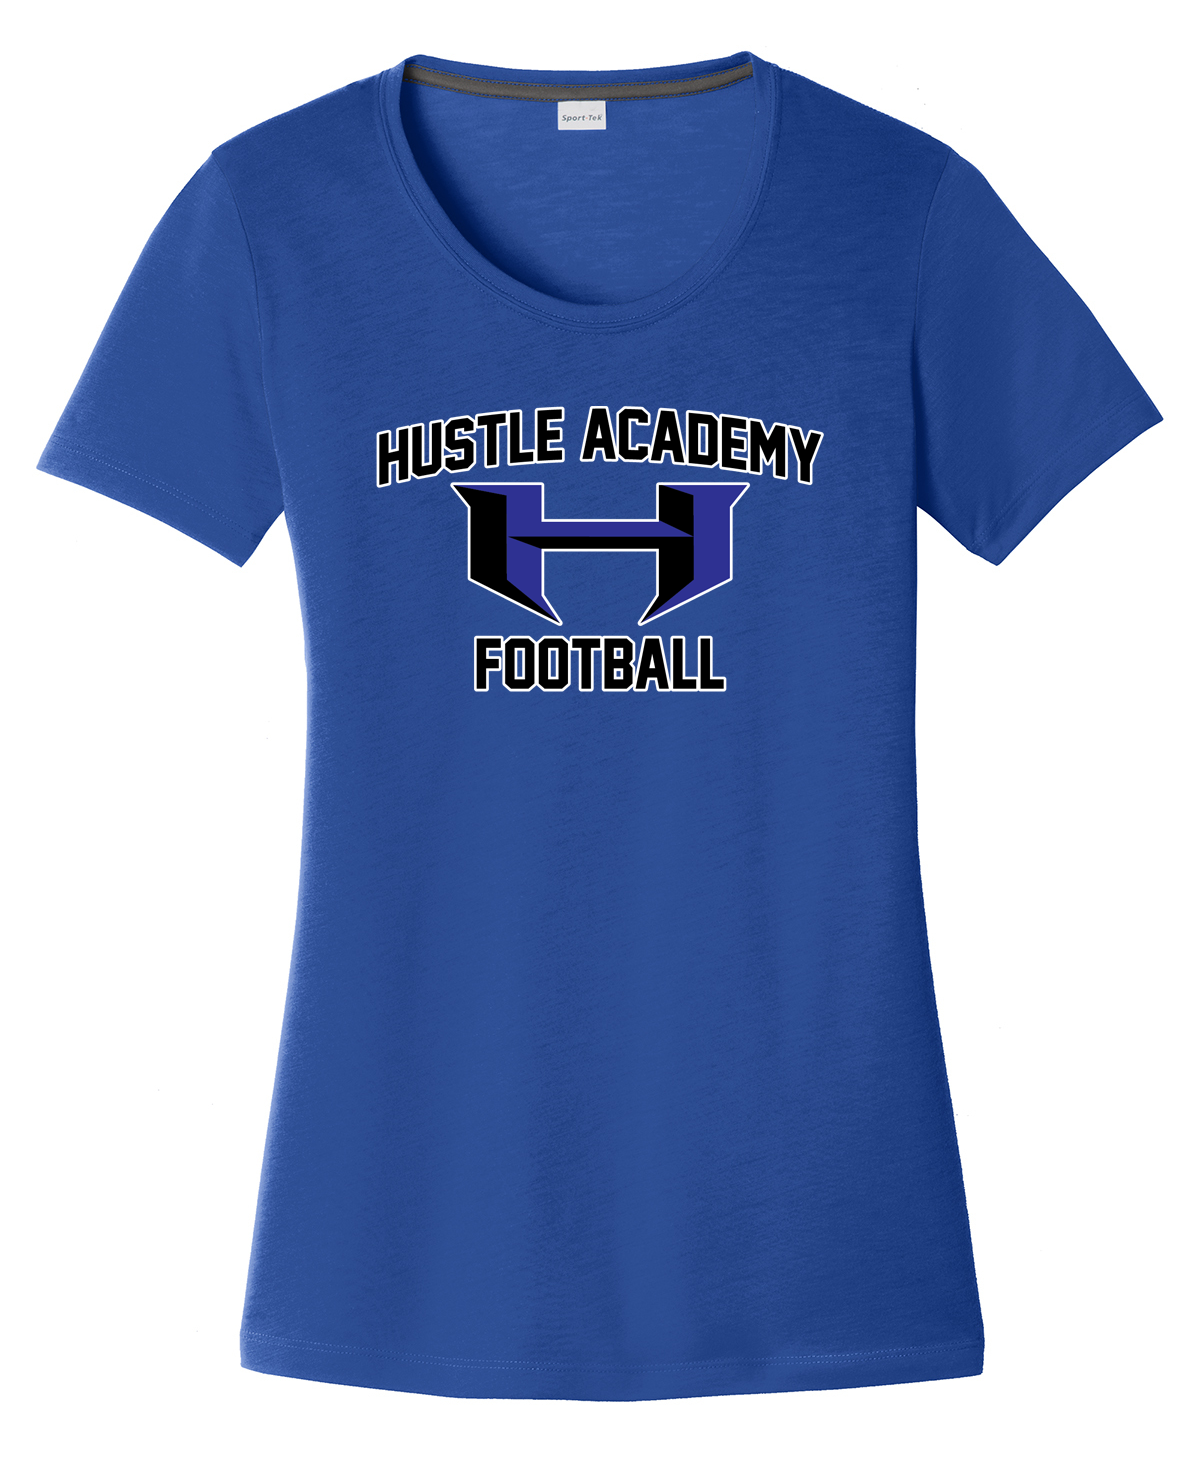 Hustle Academy Football Women's CottonTouch Performance T-Shirt